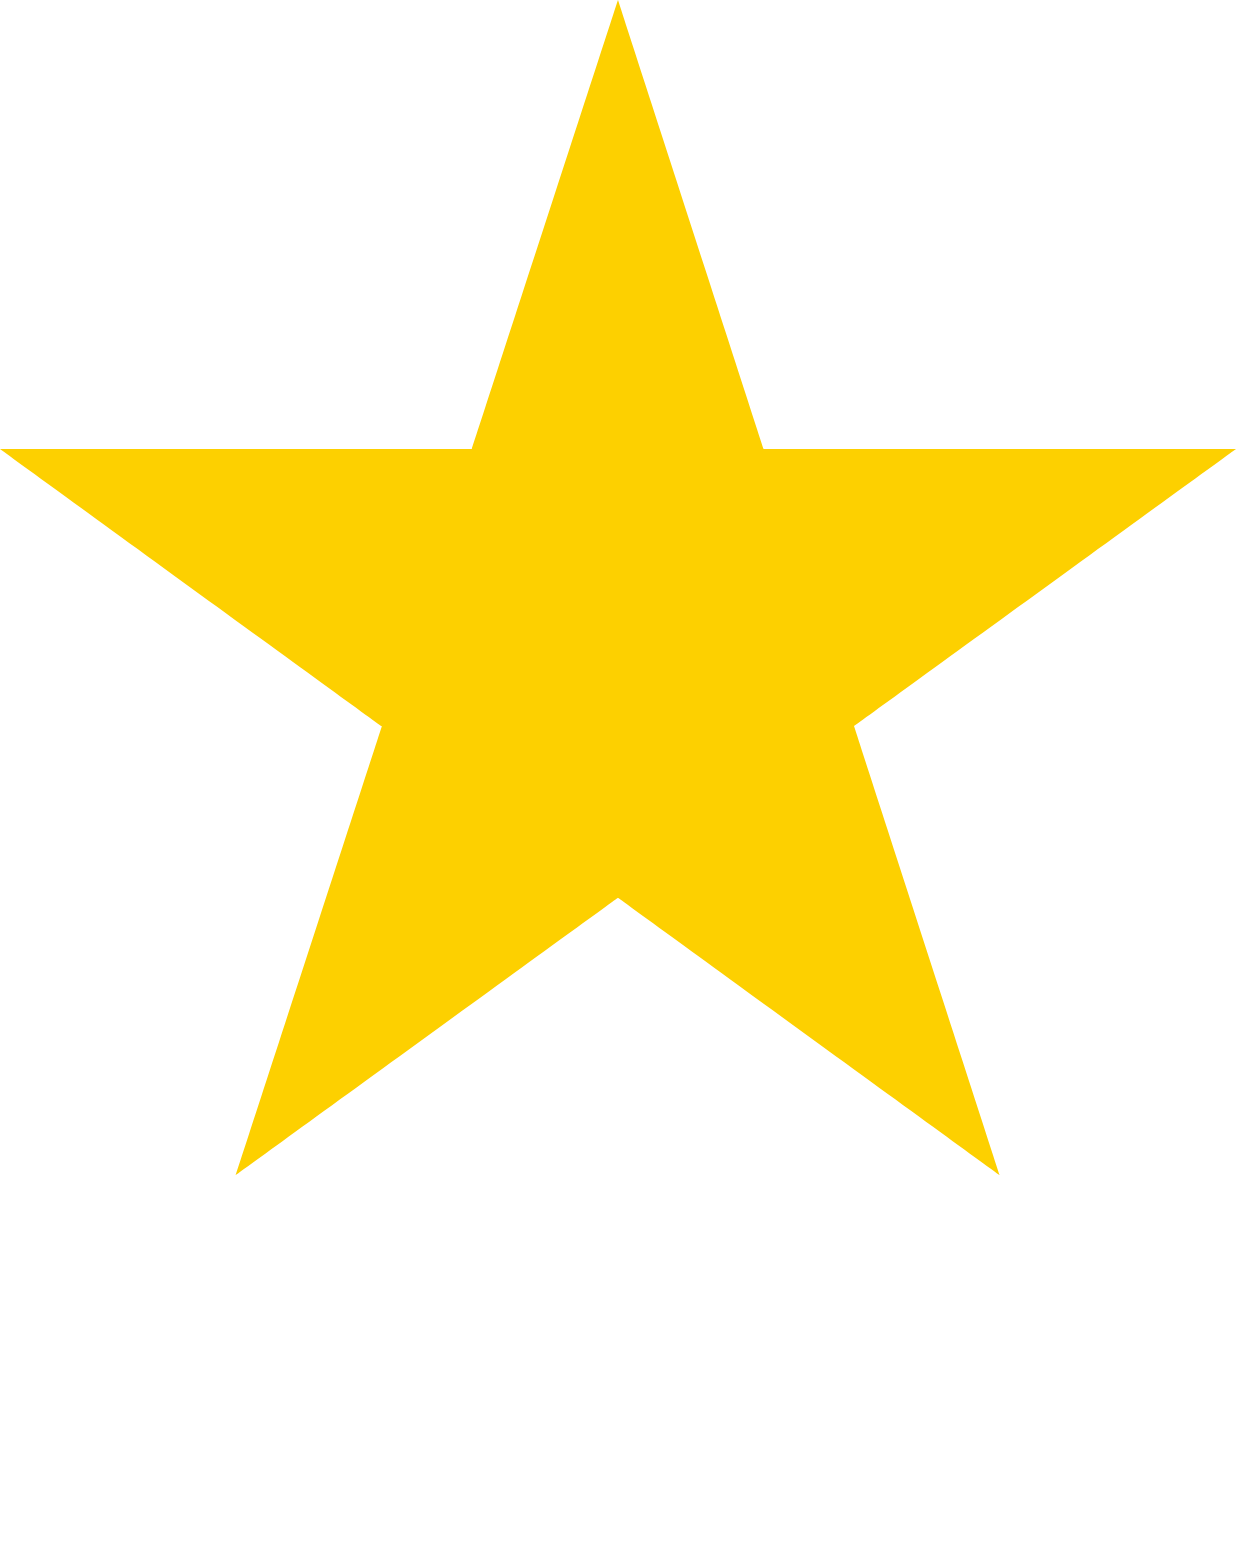 Sapporo logo grand pour les fonds sombres (PNG transparent)